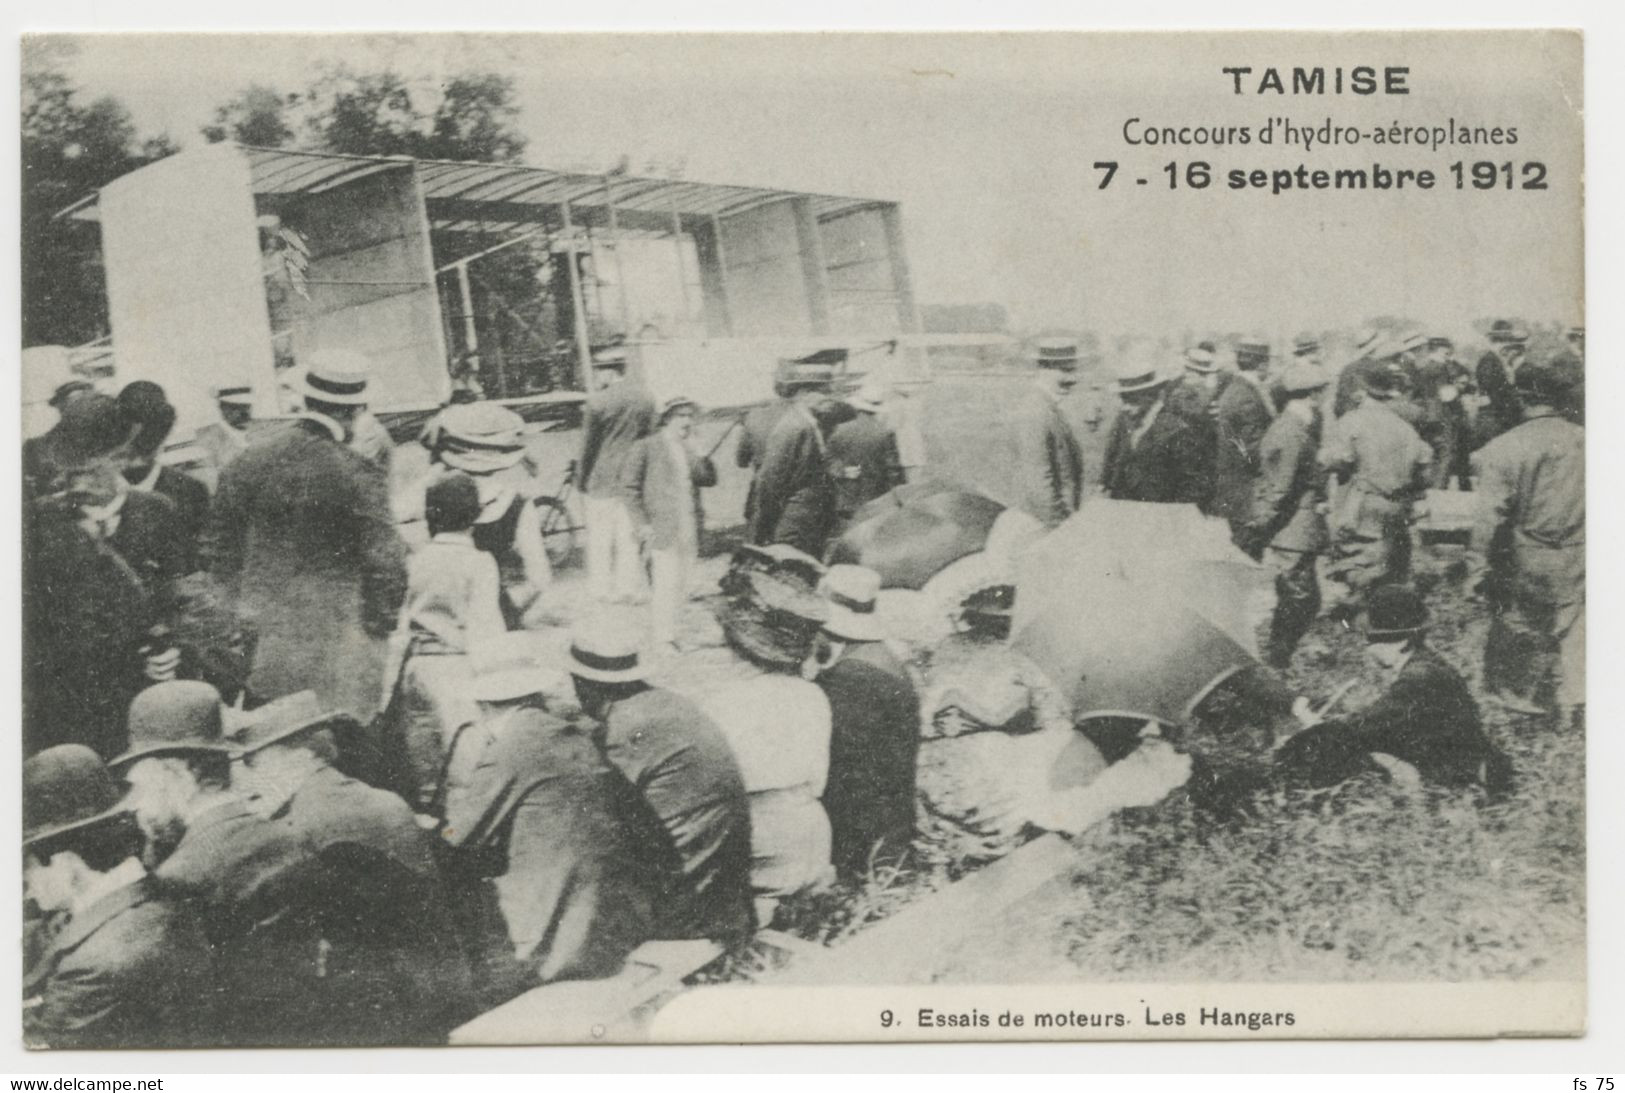 BELGIQUE - TEMSE / TAMISE - CONCOURS D'HYDRO-AEROPLANES - SEPTEMBRE 1912 - ESSAIS DE MOTEURS - LES HANGARS - Temse